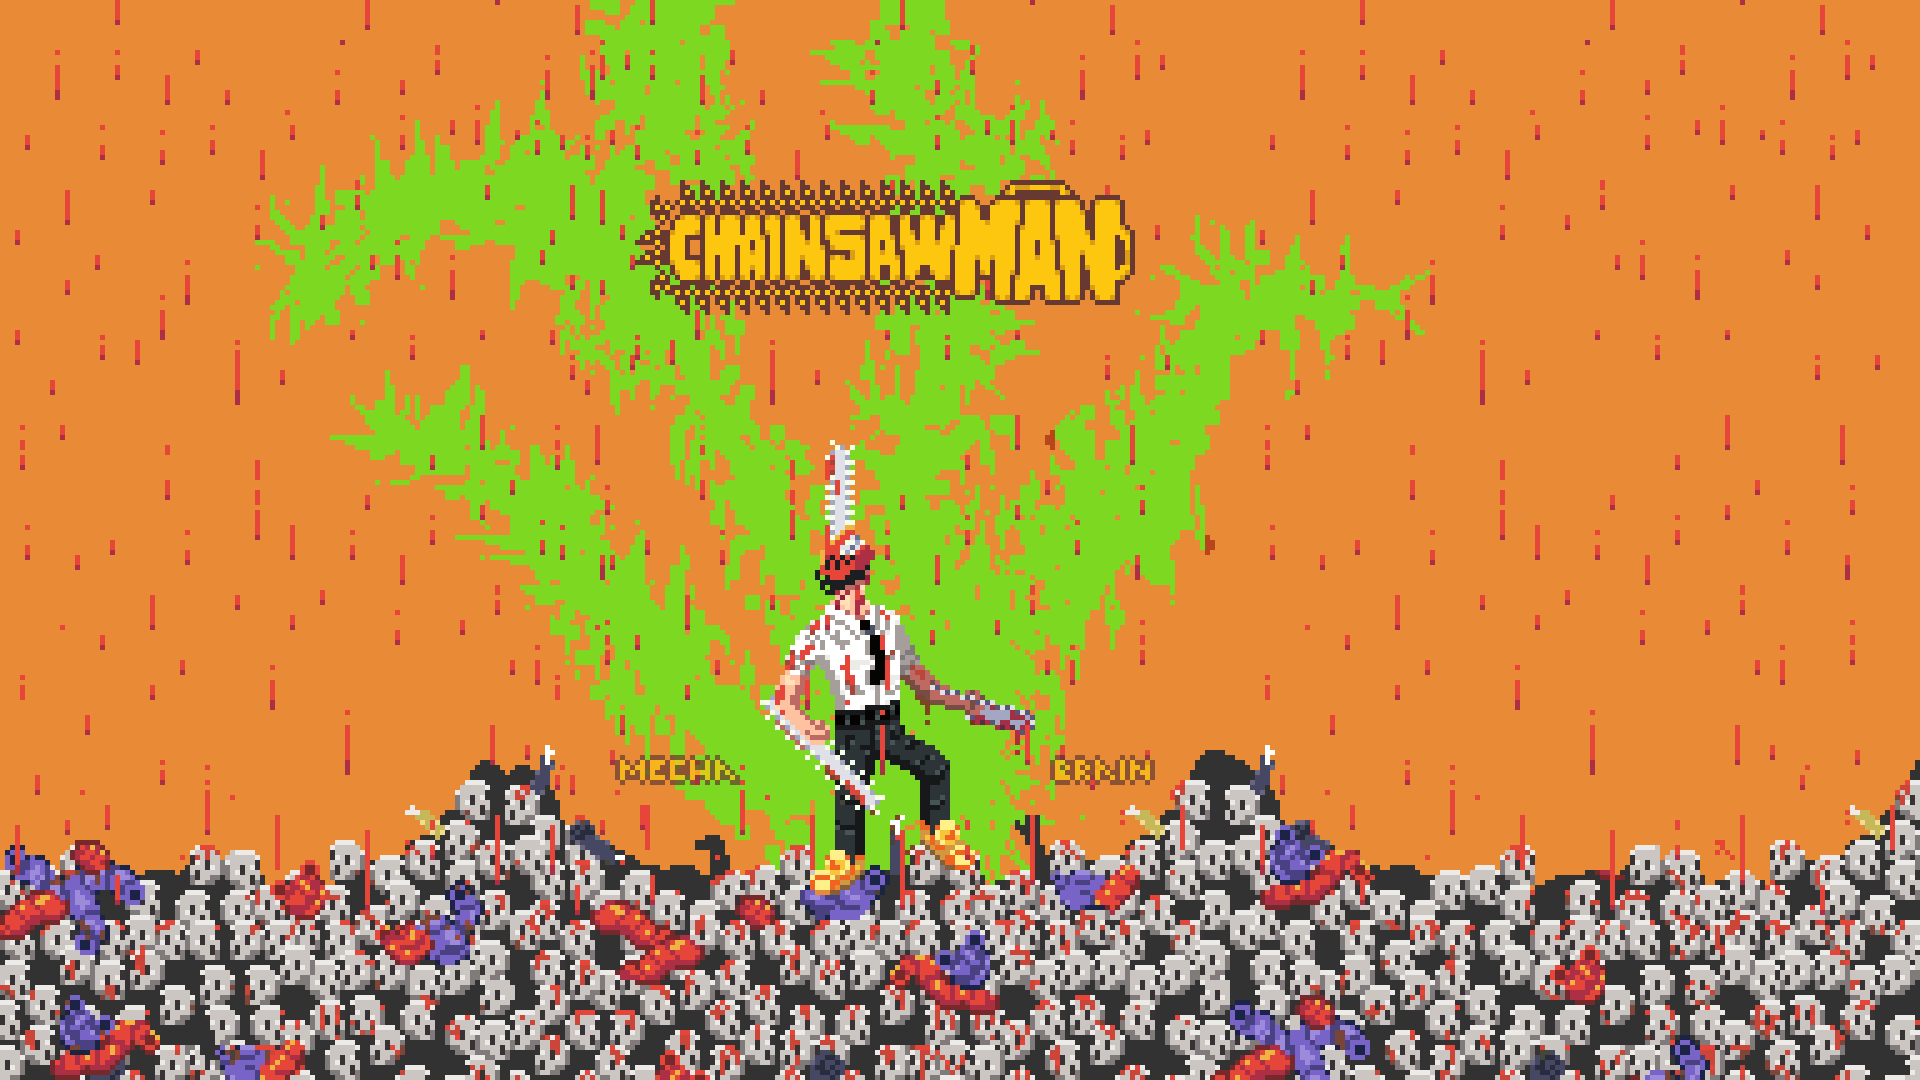 Hình nền Chainsawman – Bạn yêu thích bộ truyện Chainsawman, nhân vật Denji và Power? Hình nền Chainsawman đưa hình ảnh tuyệt đẹp của hai nhân vật chính đến màn hình máy tính của bạn. Hãy tải hình nền Chainsawman để cảm nhận vẻ đẹp độc đáo của họ.